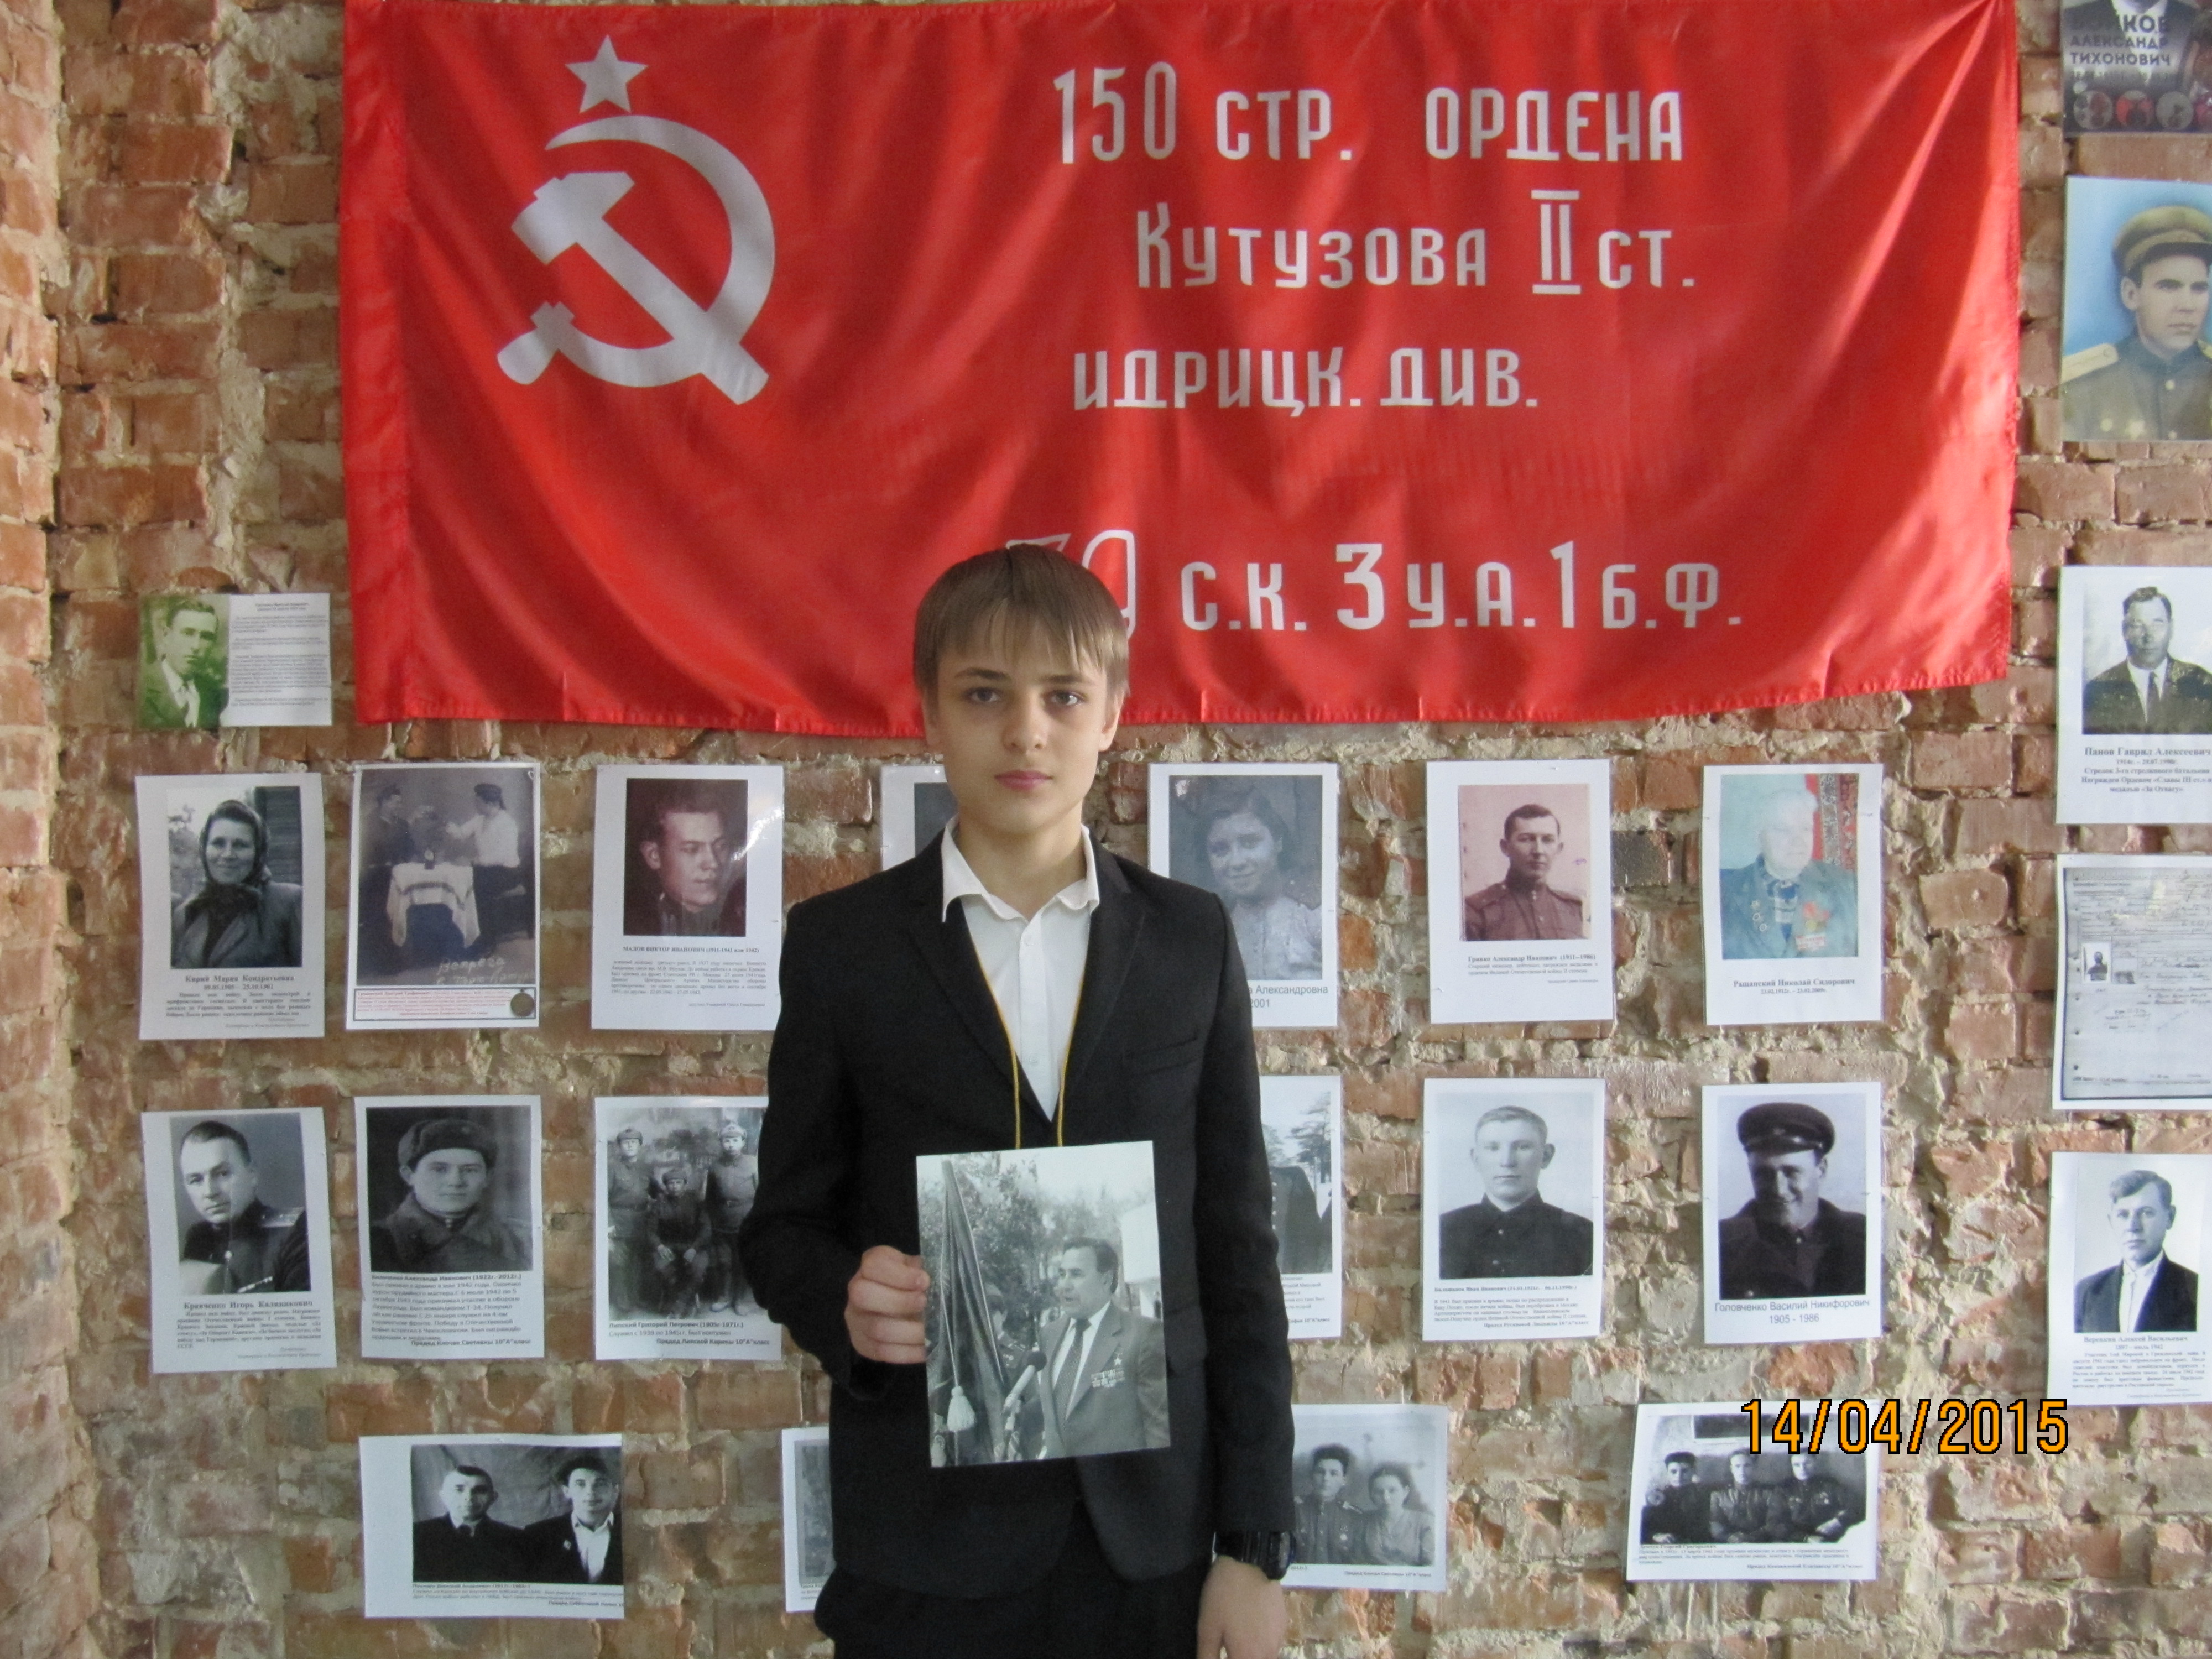 Ученик гимназии держит в руках фотографию своего деда - Героя Советского Союза